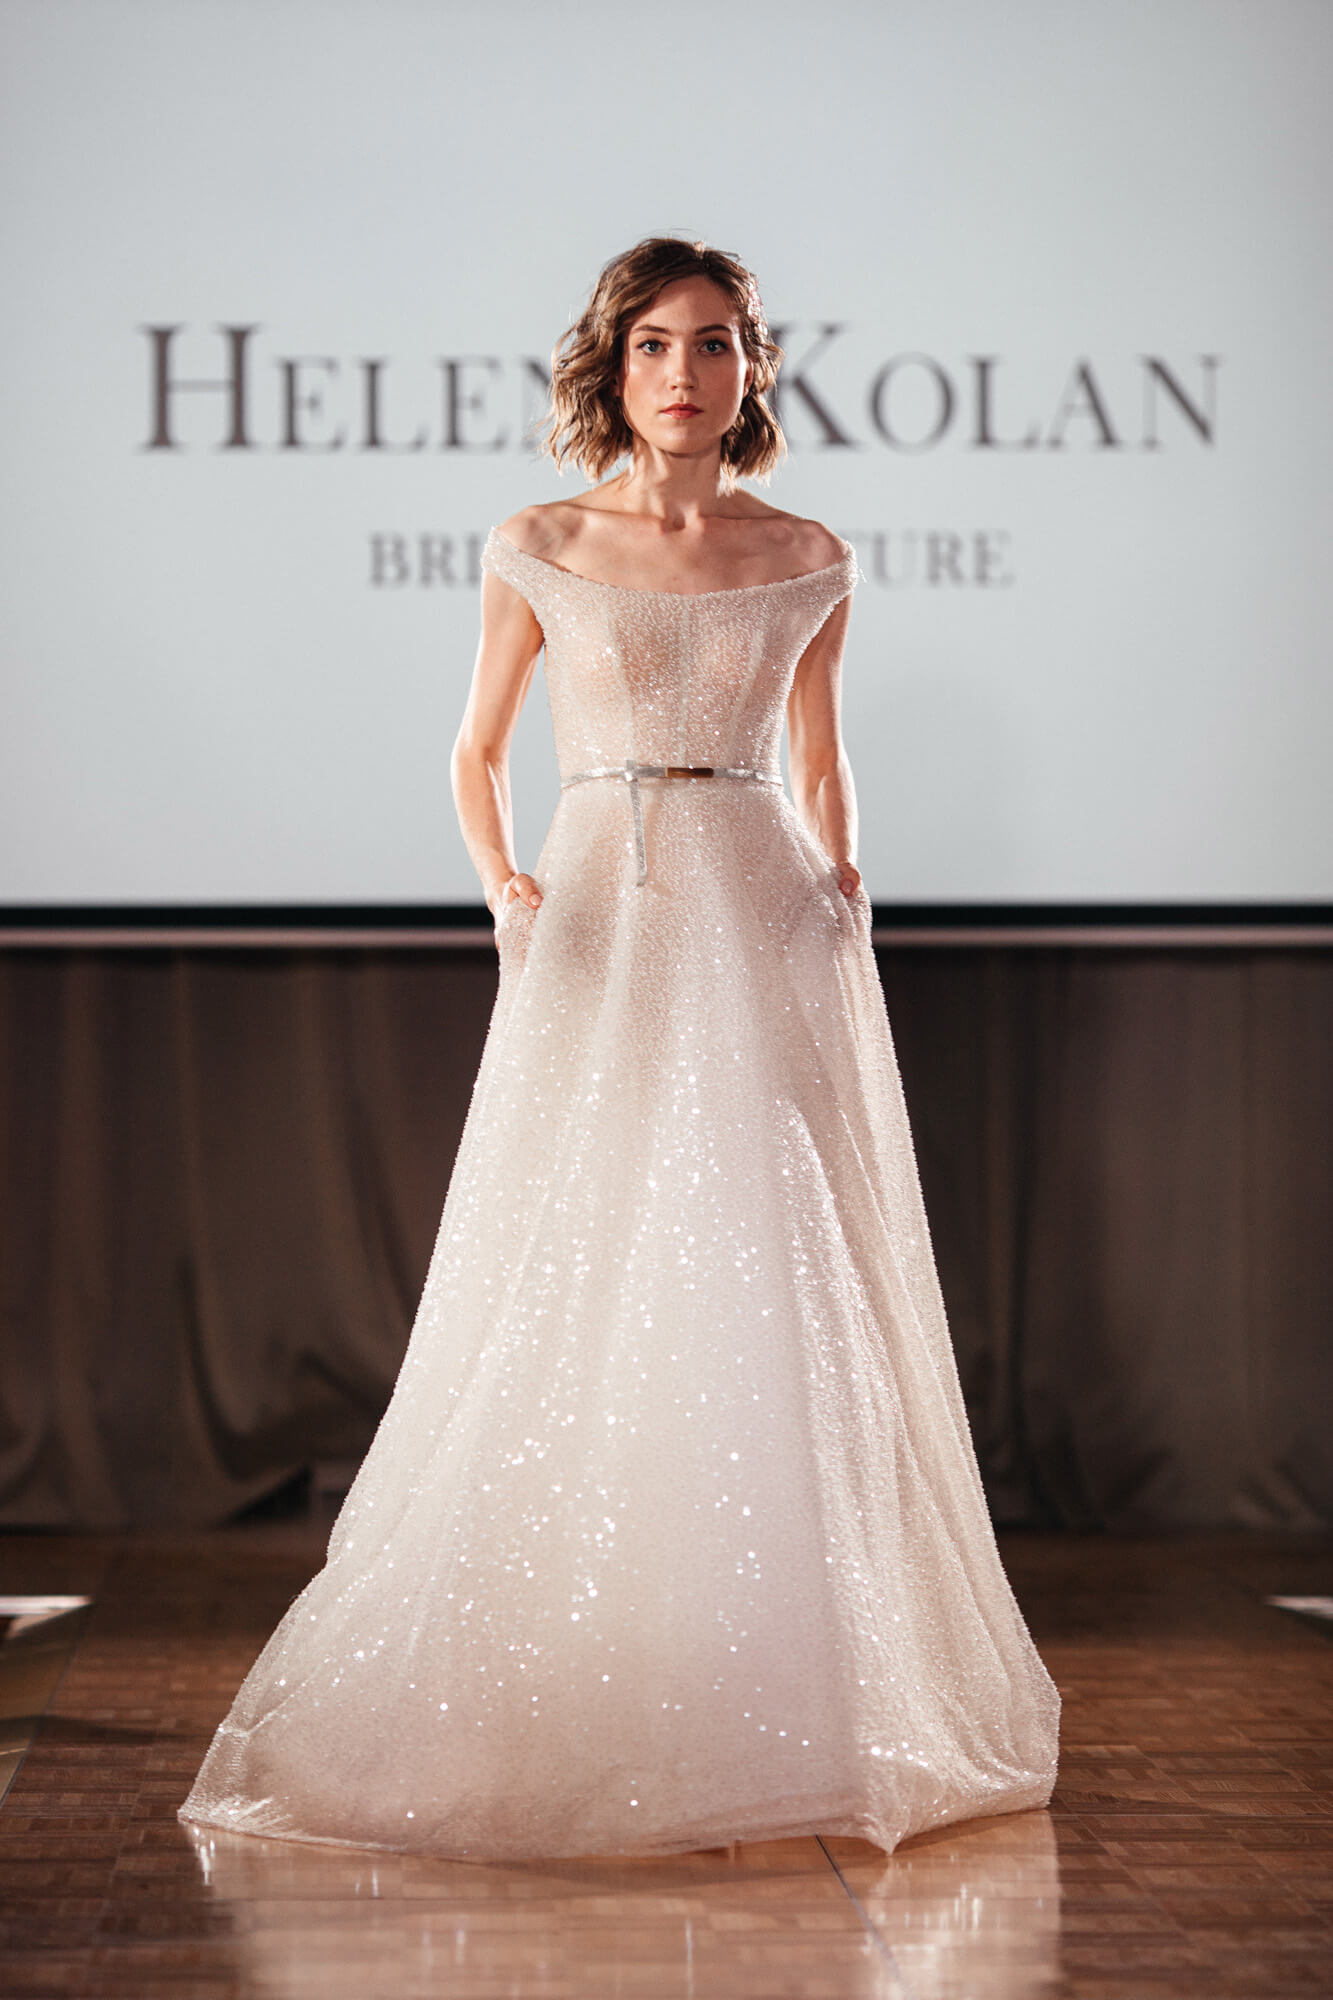 Организация показа свадебных платьев Helena Kolan, агентство BM Weddings & Events